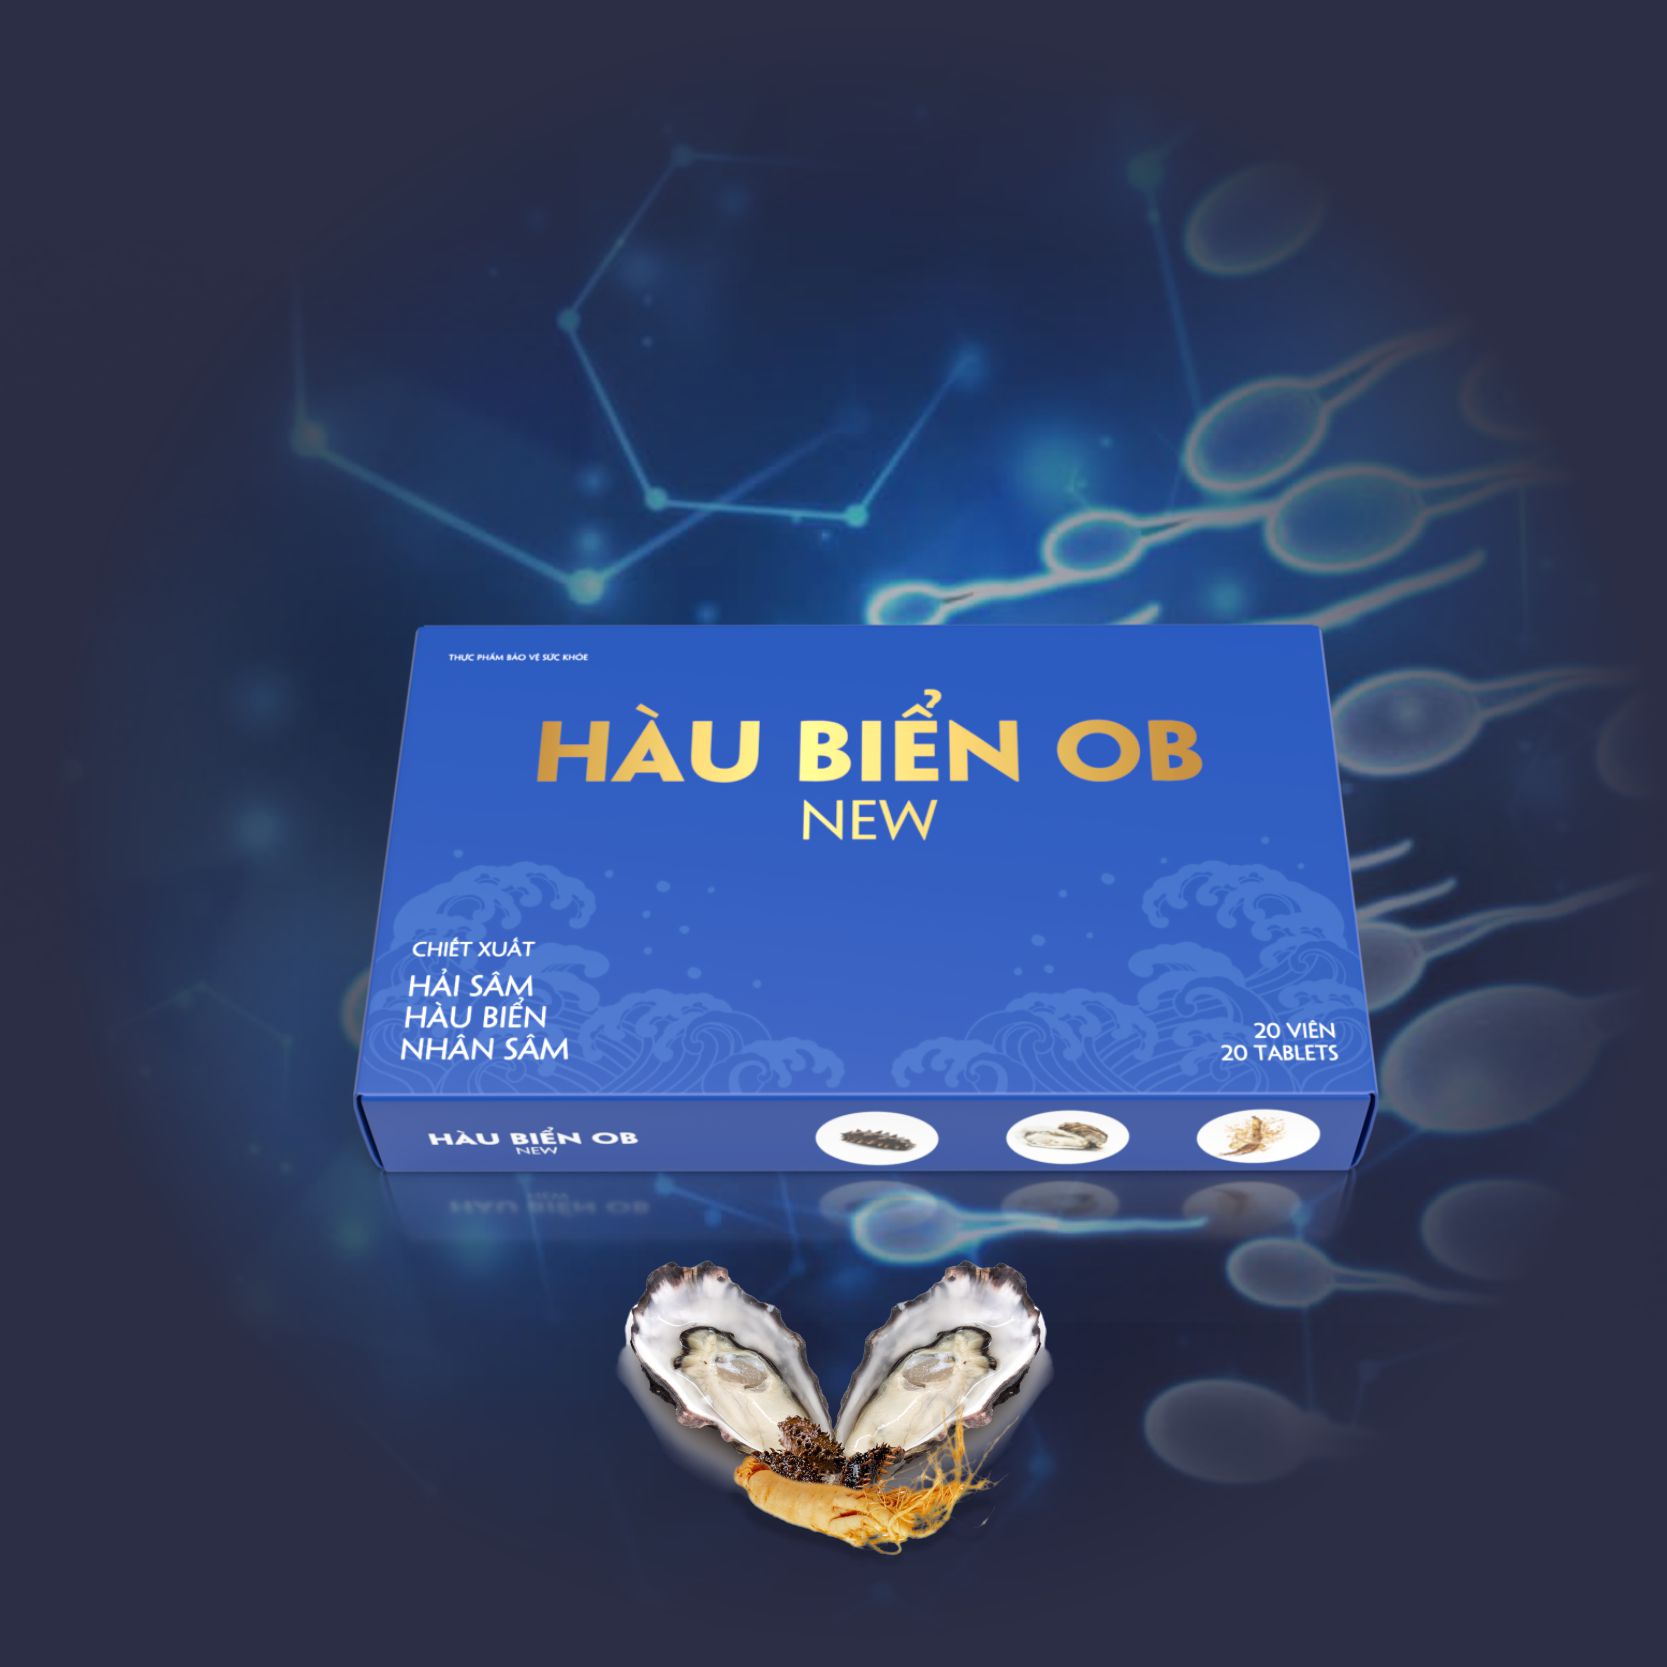 hau-bien-ob-new (16)